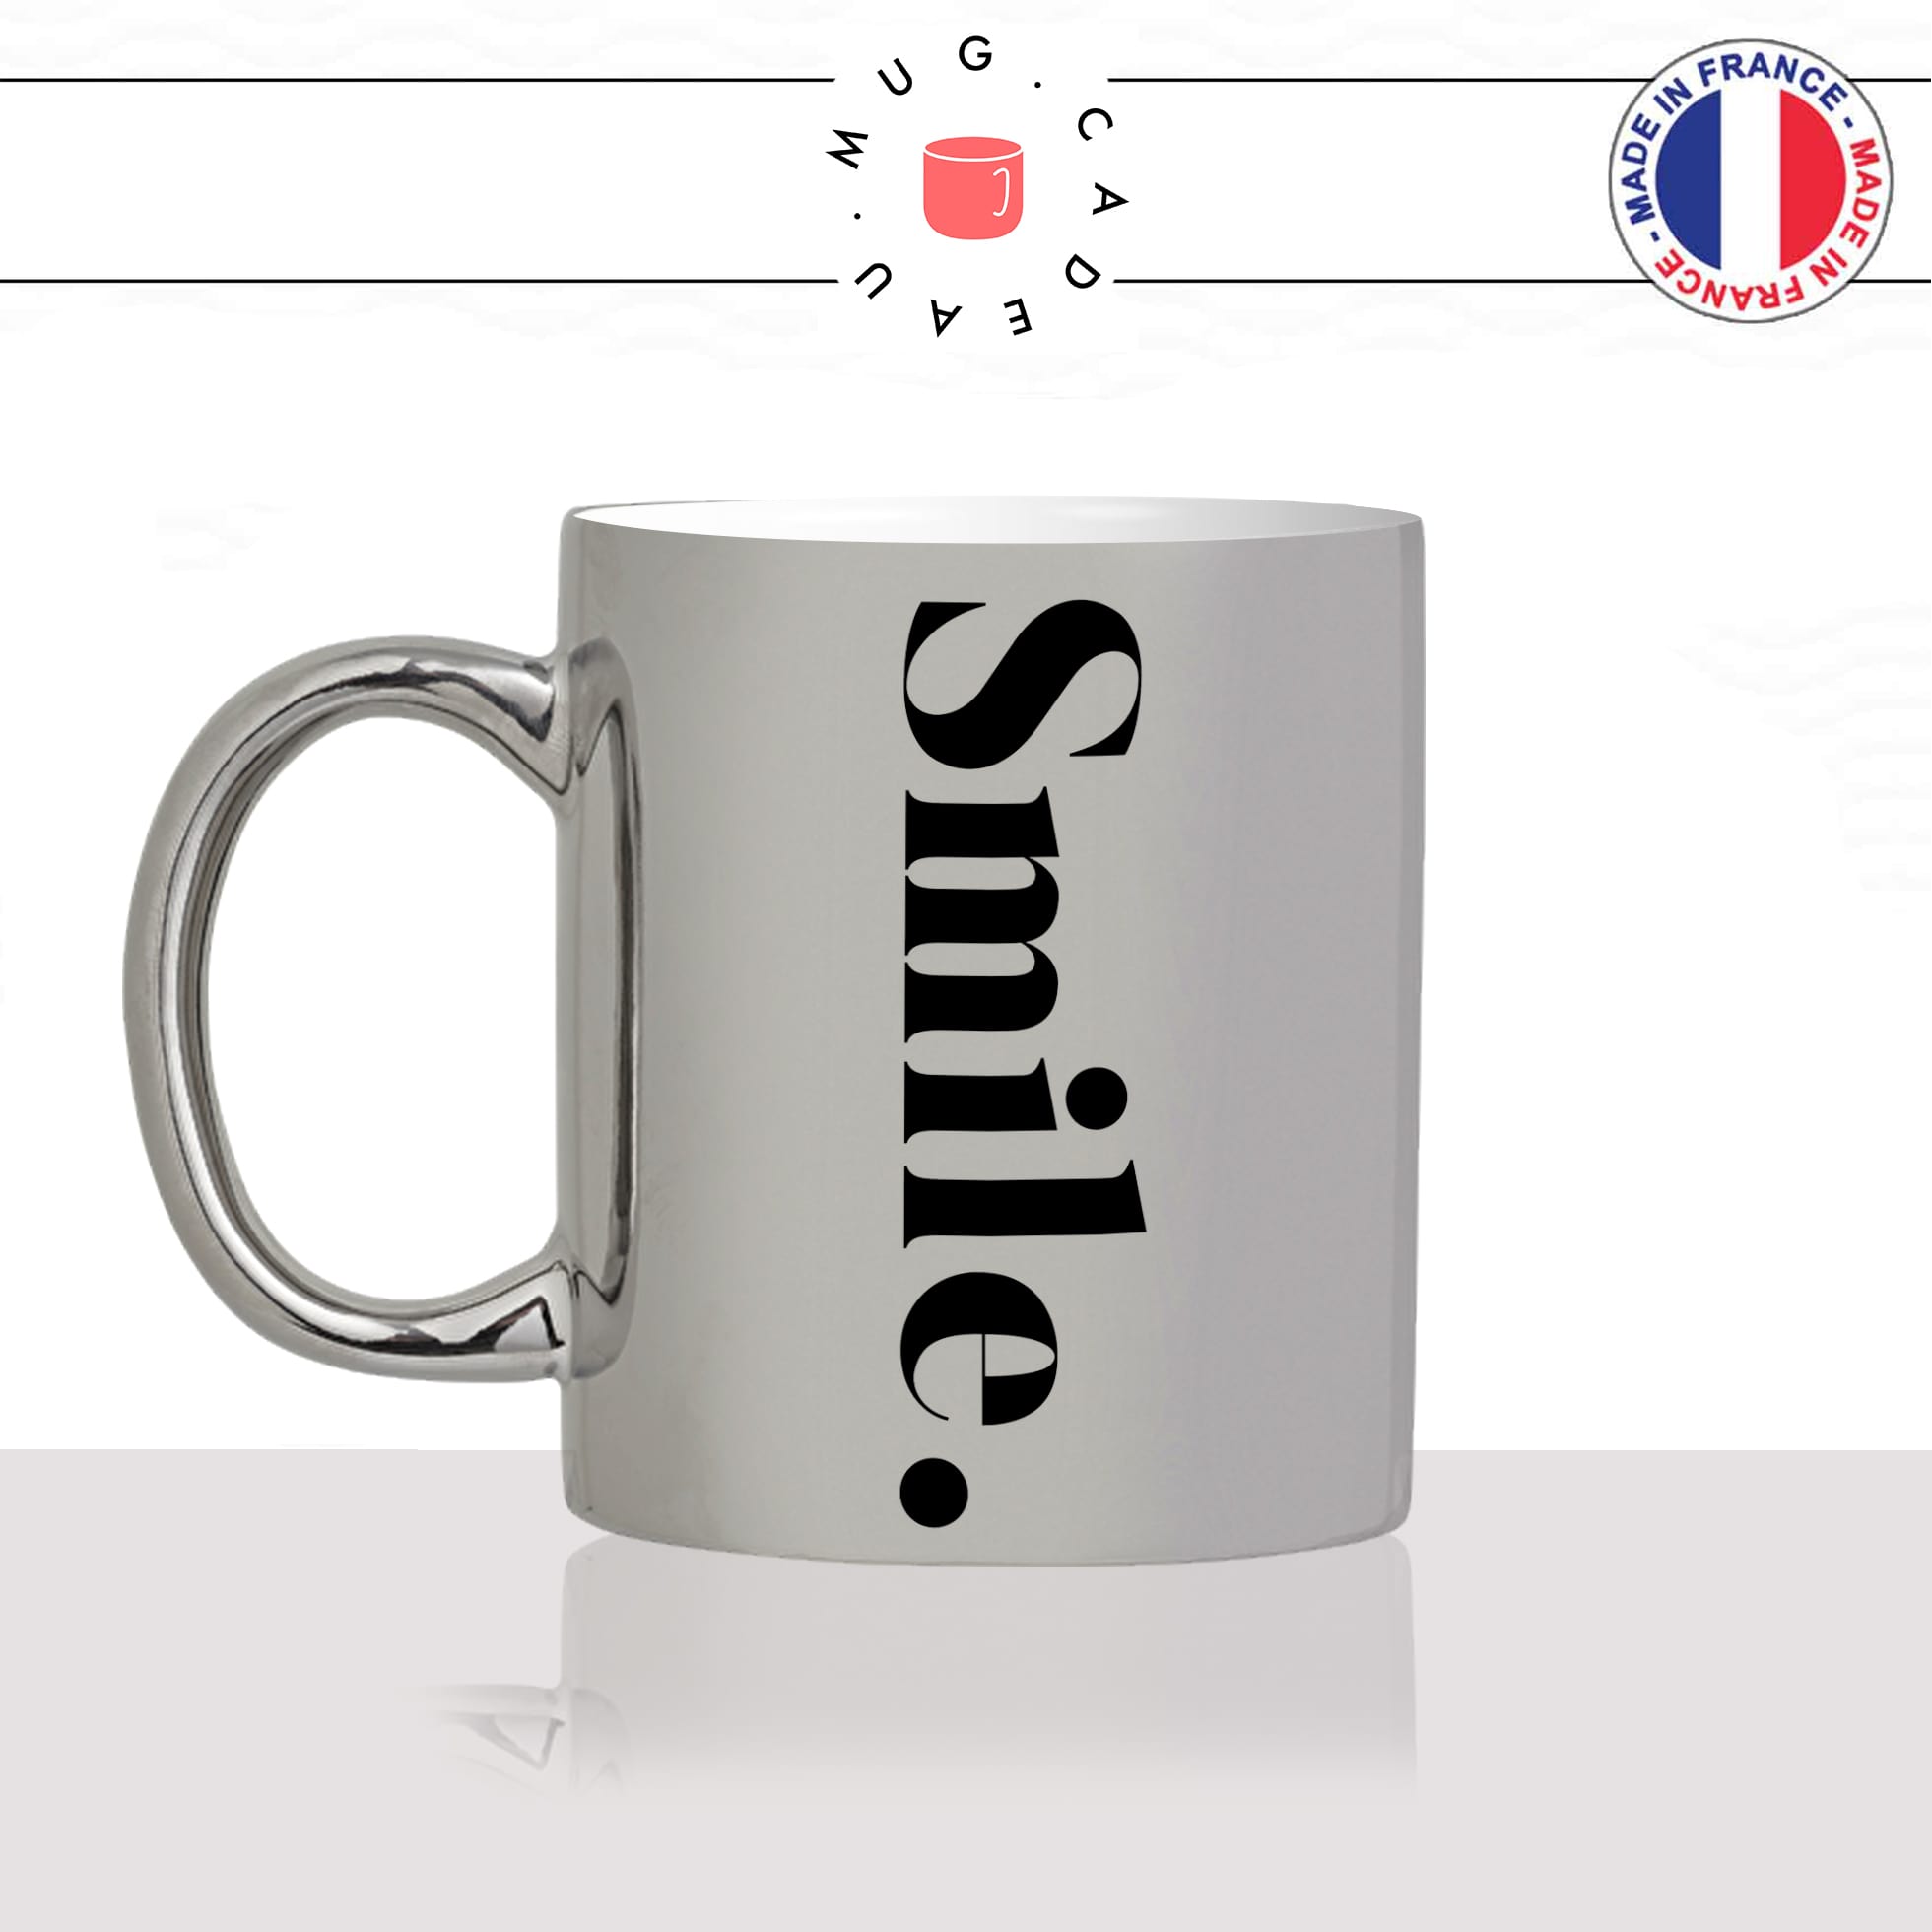 mug-tasse-silver-argenté-smile-sourire-calligraphie-lettrine-mot-anglais-collegue-décoration-amie-idée-cadeau-original-personnalisé-café-thé-min